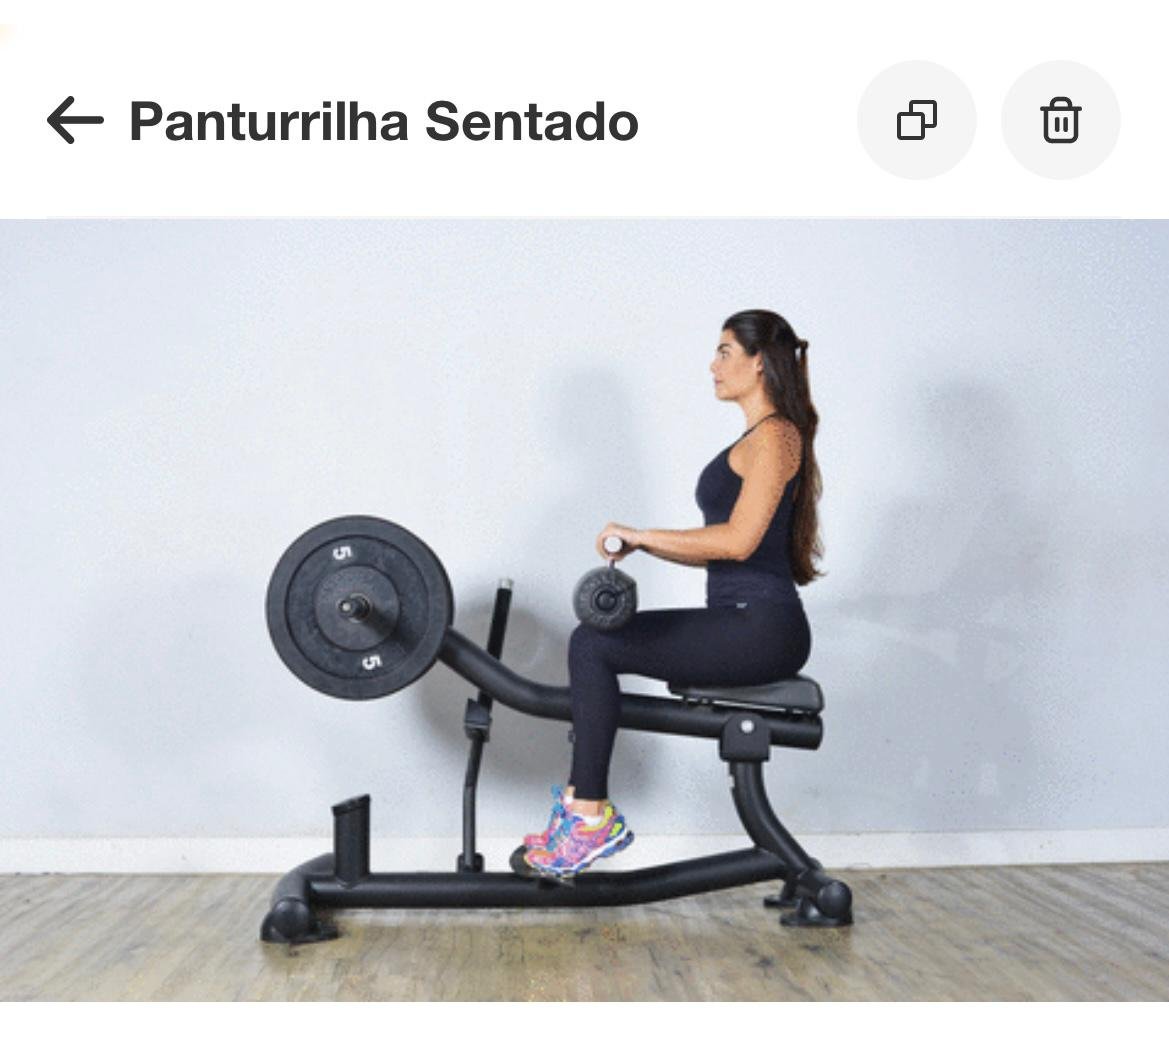 Mulher sentada em uma máquina, fazendo exercício para as panturrilhas - Metrópoles